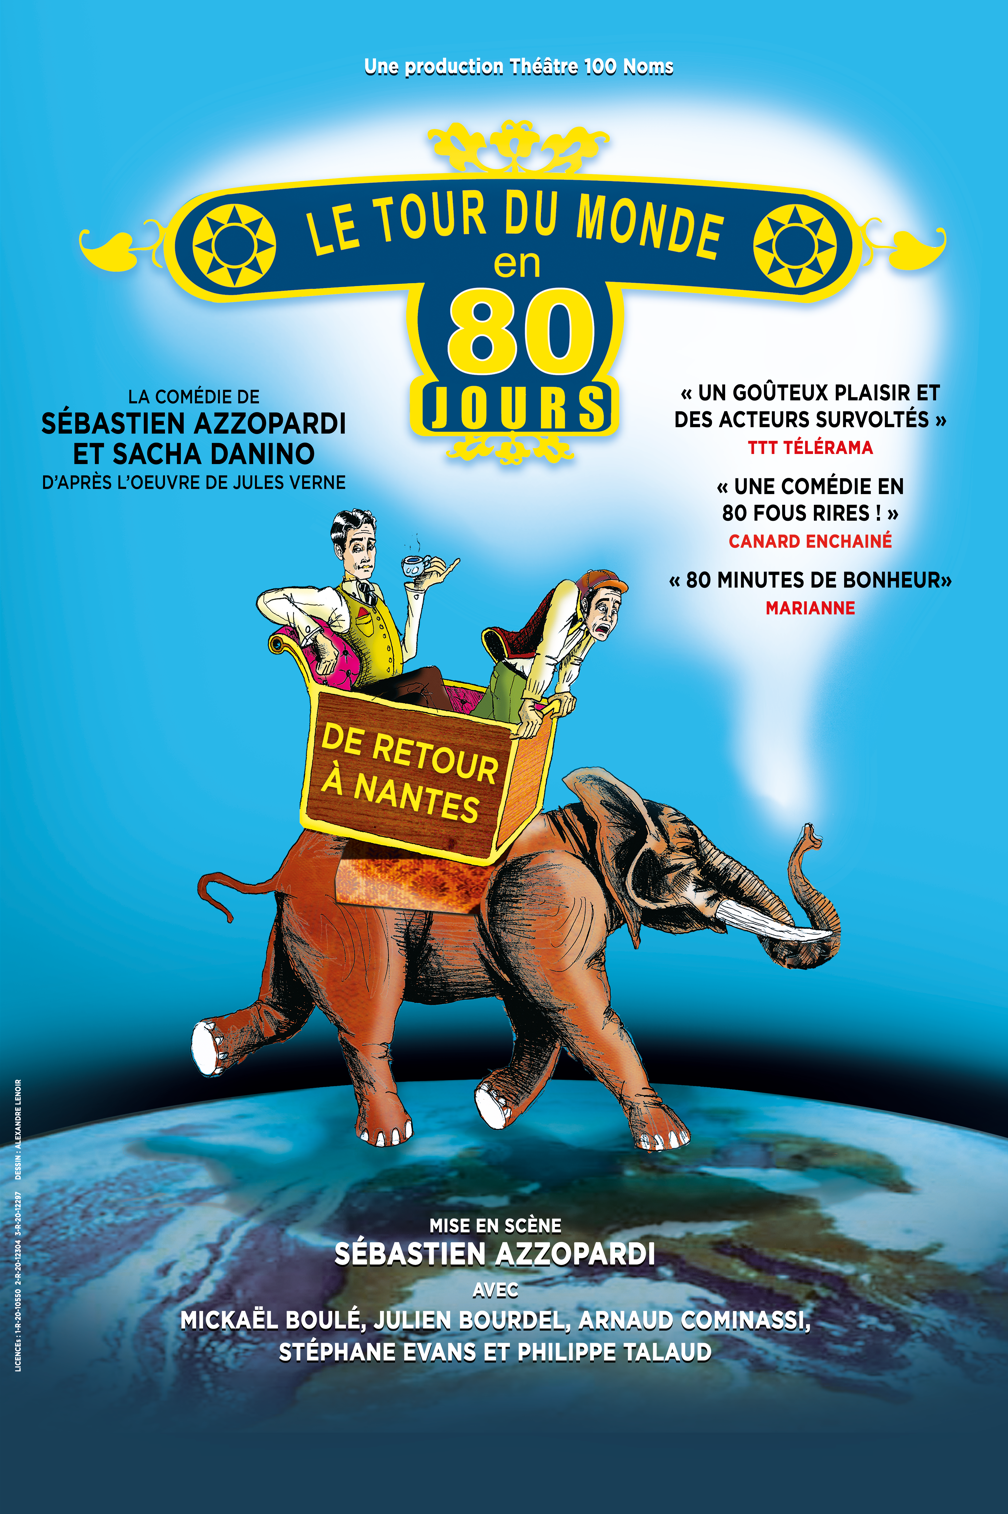 Le Tour du Monde en 80 Jours © (DR) Théâtre 100 Noms